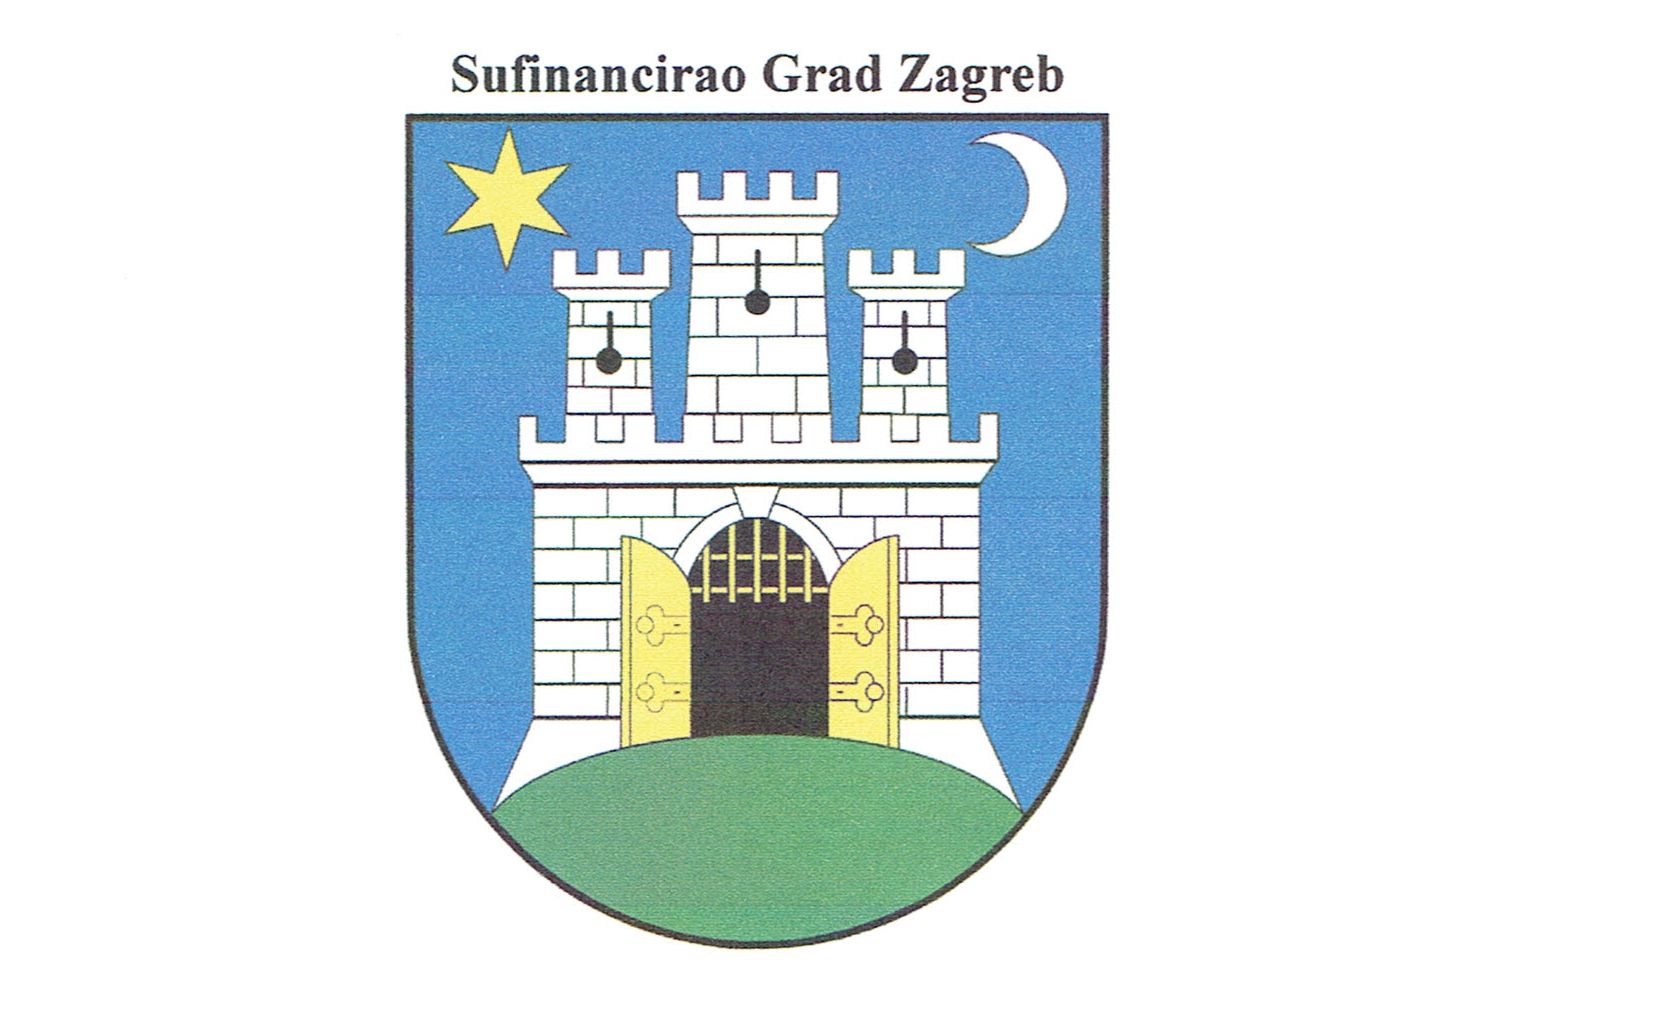 GRAD ZAGREB